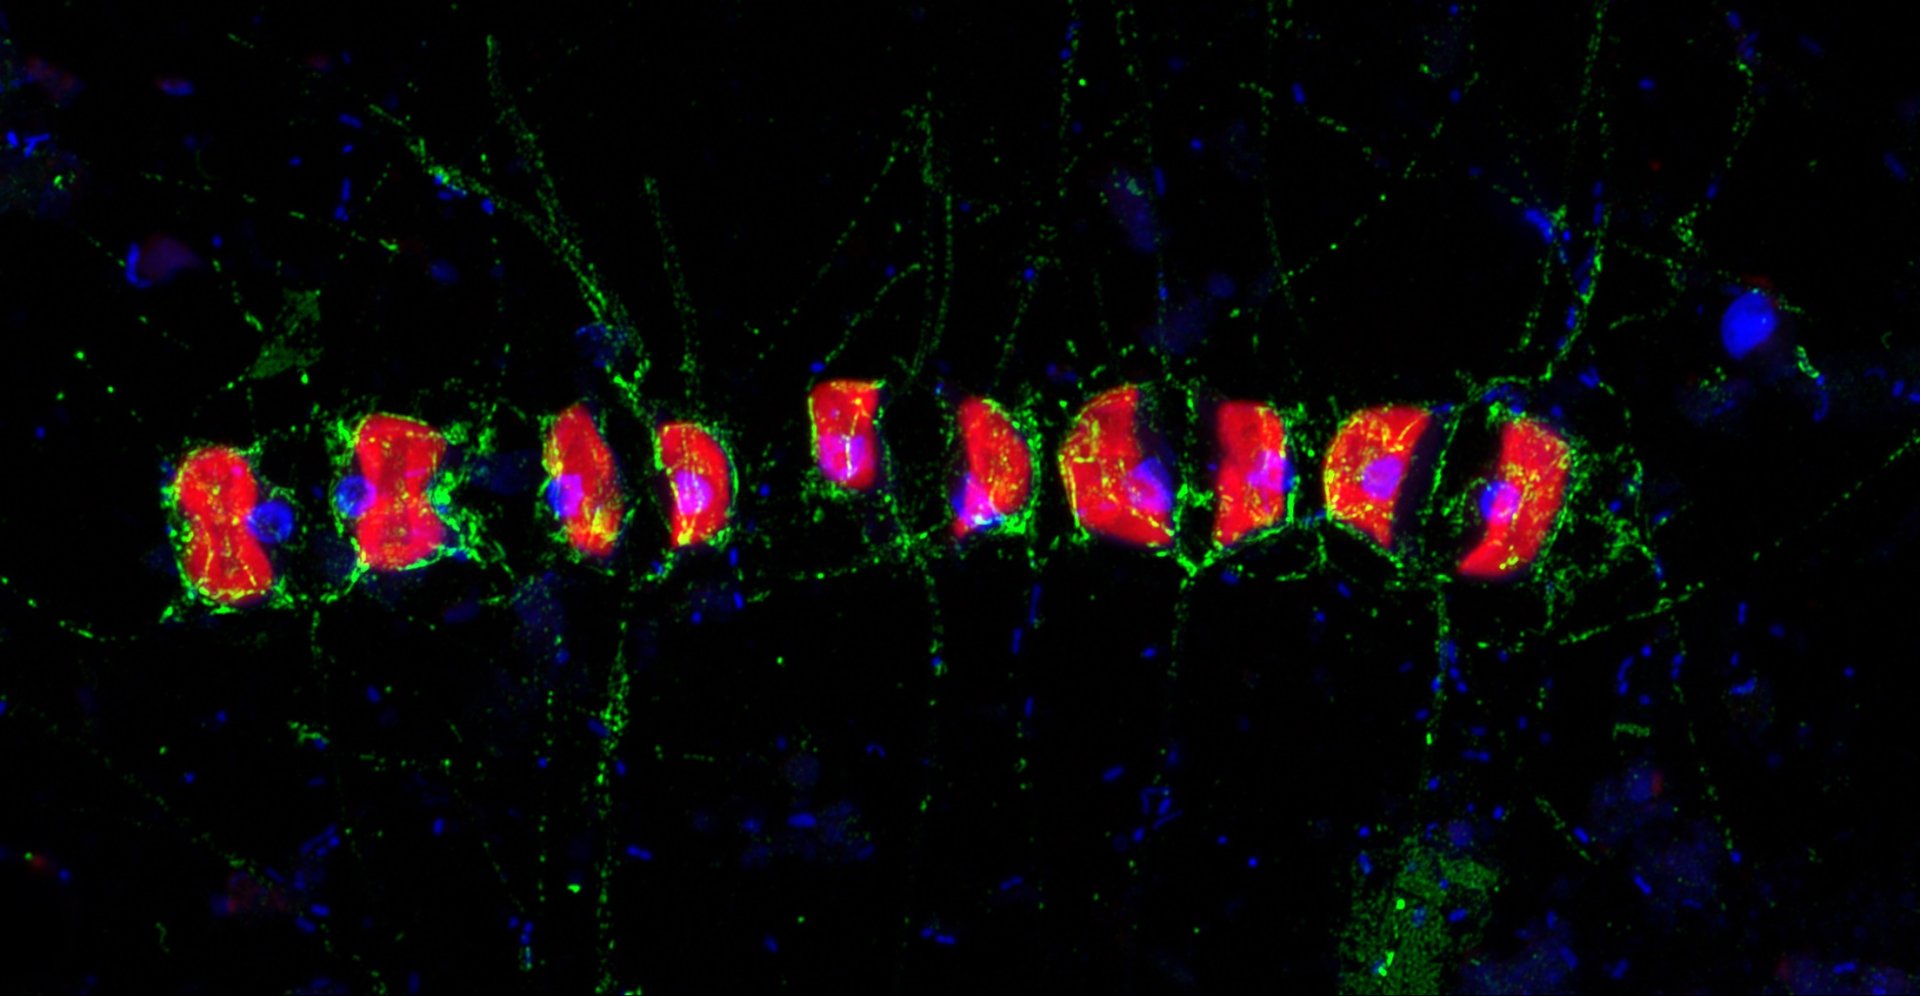 Diese hochauflösende Airyscan Aufnahme zeigt das Fucose enthaltende sulfierte Polysaccharid (FCSP, sichtbar in Grün) rund um die Zellen der kettenbildenden Kieselalge Chaetoceros socialis und ihrer Nadeln. DAPI (blau) und Kieselalgen-Selbstfluoreszenz (rot). Die Probe wurde während der Frühjahrs-Algenblüte im Jahr 2016 vor Helgoland genommen. (© Max-Planck-Institut für Marine Mikrobiologie/ S. Vidal-Melgosa)